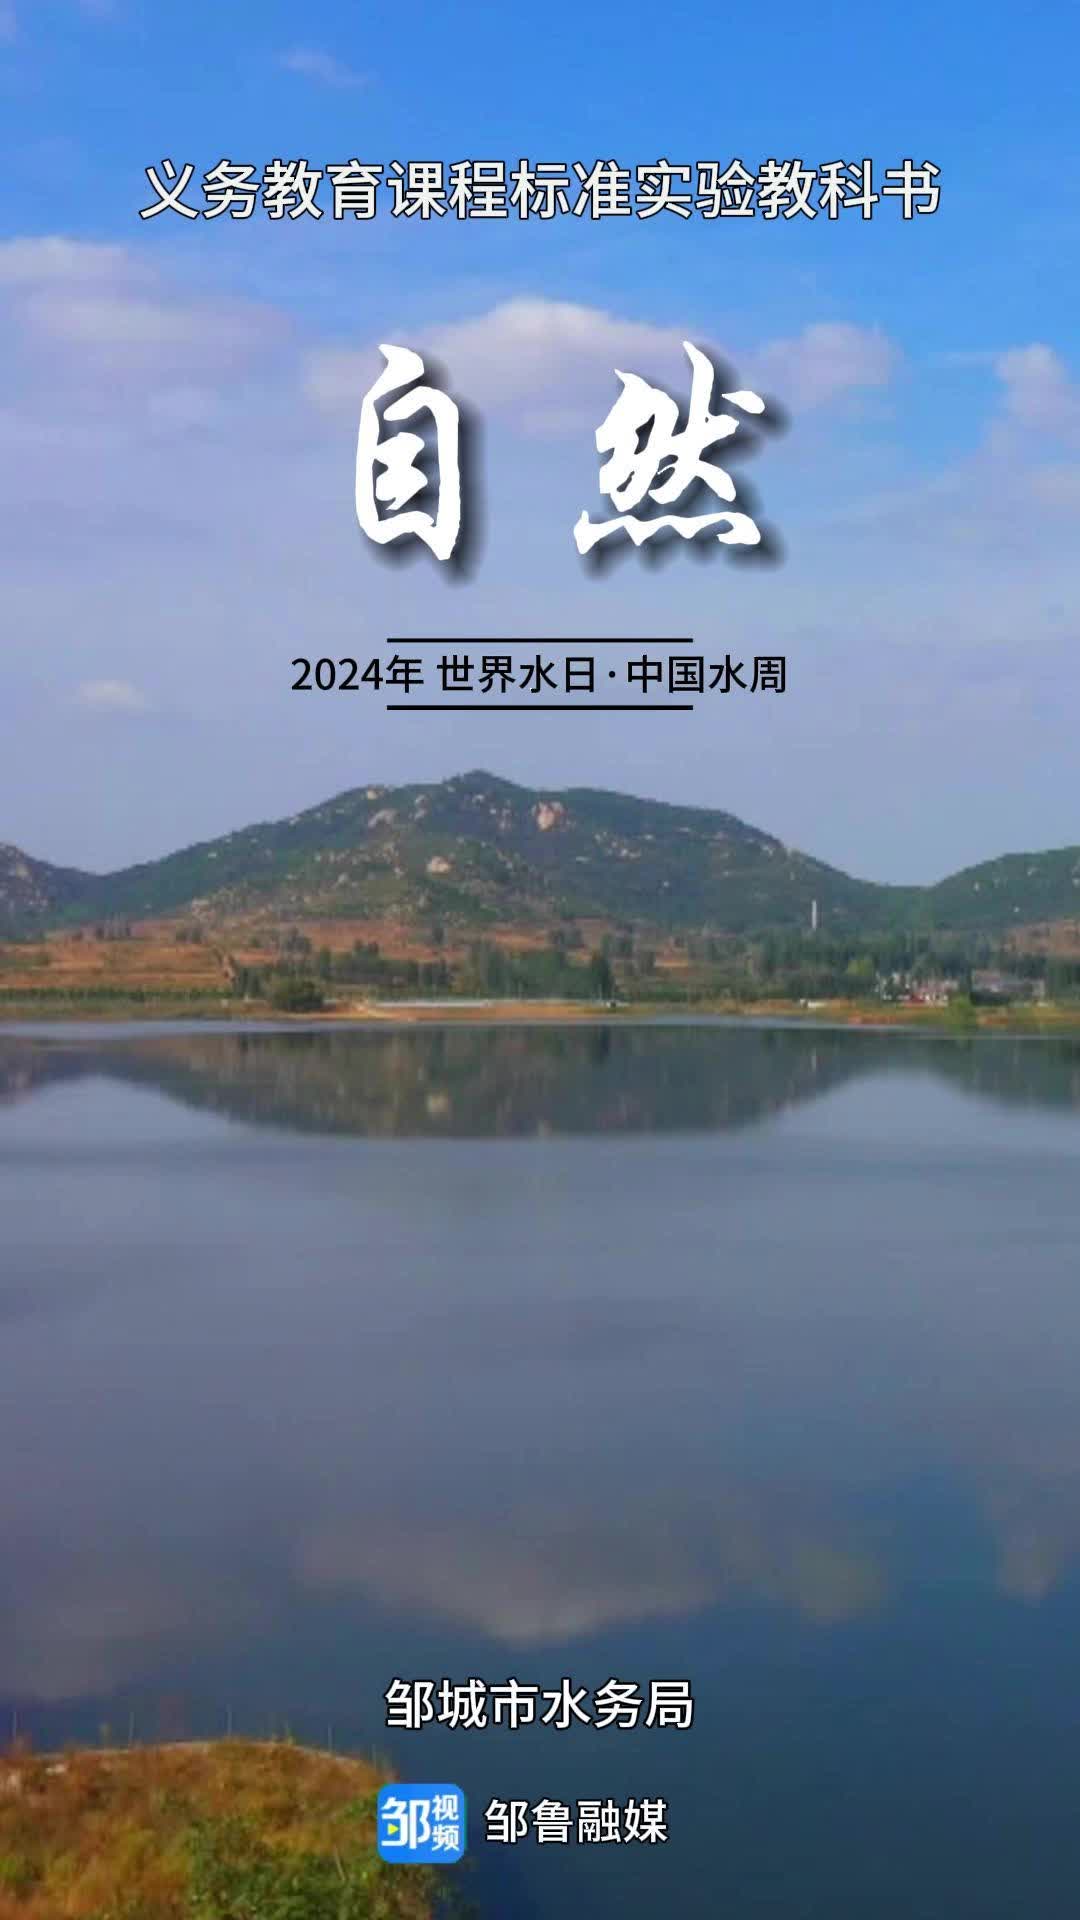 【邹视频·风景】26秒 | 世界水日 通过教科书看邹城美丽河湖